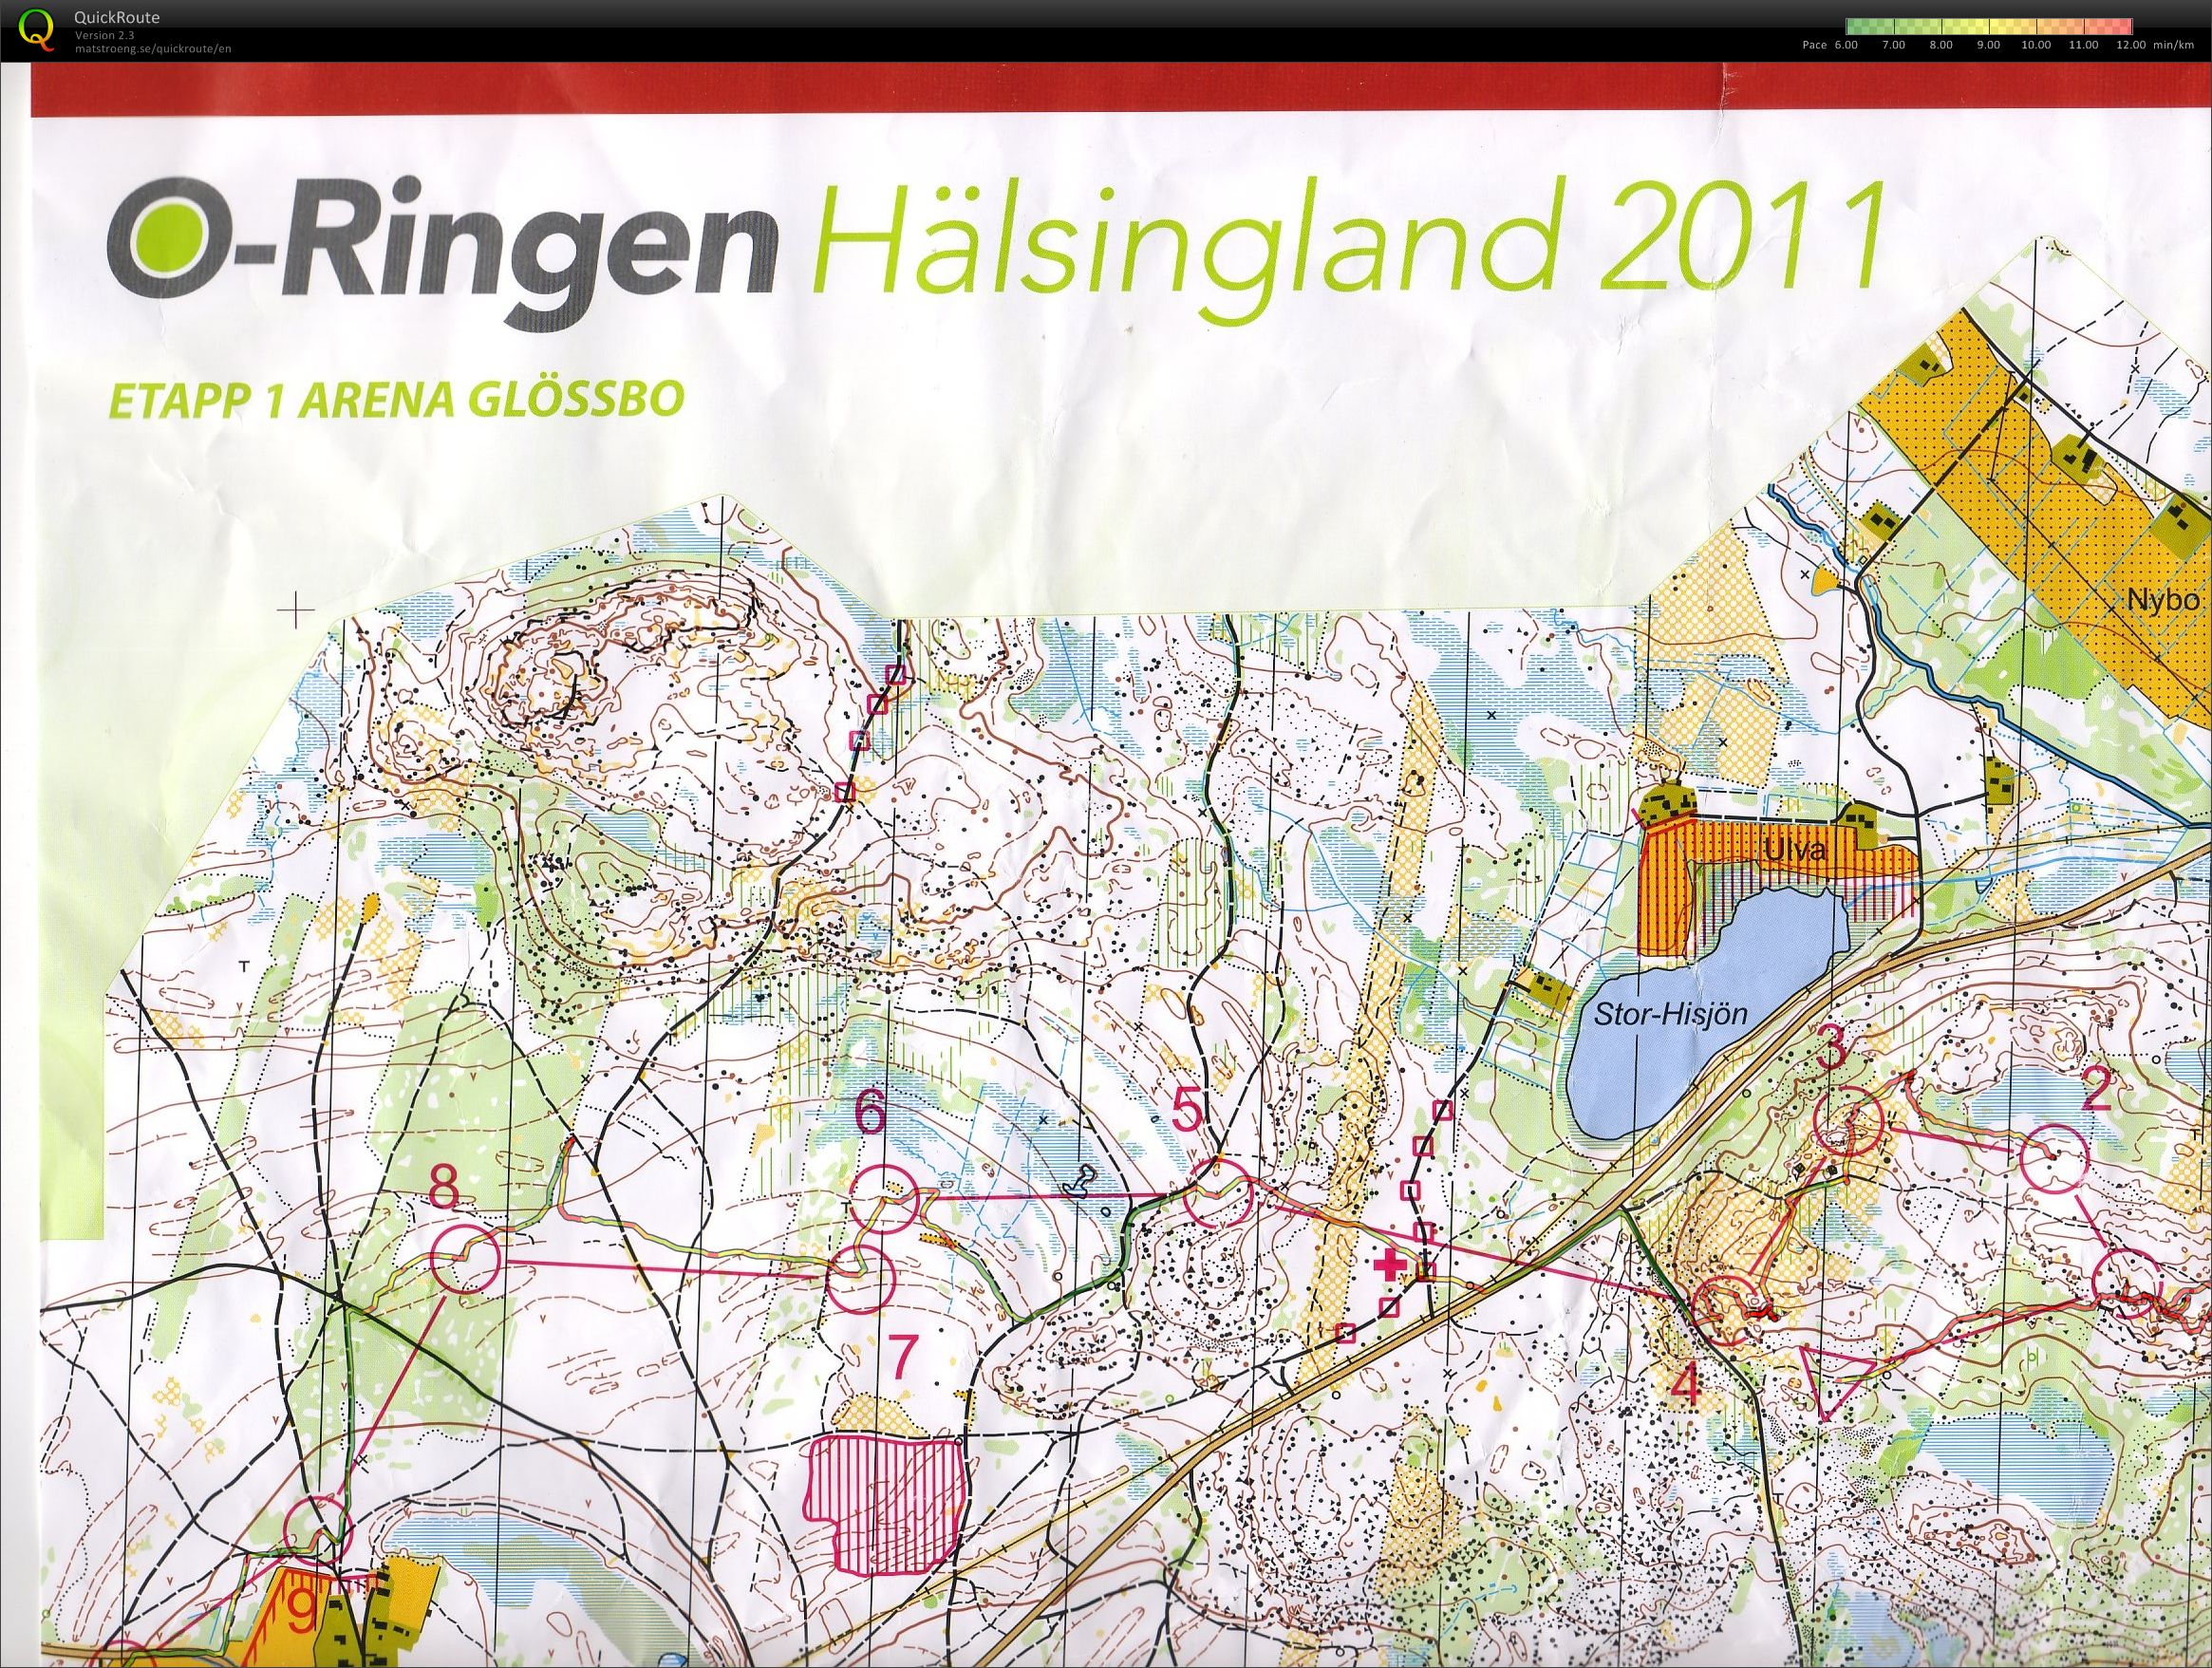 O-ringen 2011 Hälsingland  (24/07/2011)